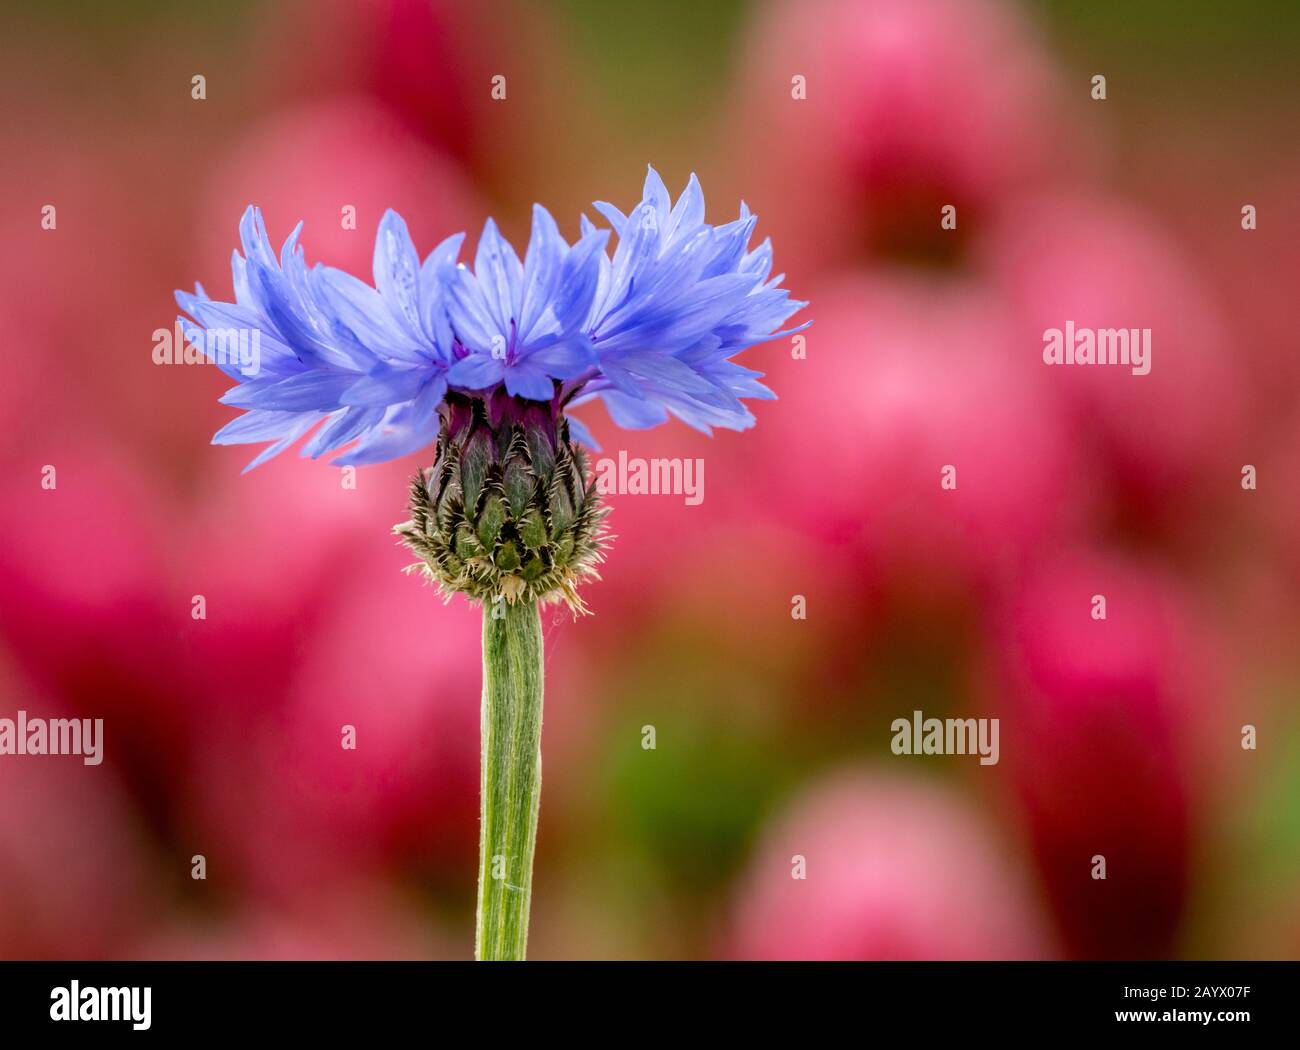 fleur de maïs bleu unique ou fleur de bouton de bachelor (centaurea cyanus) sur fond violet, détail Banque D'Images